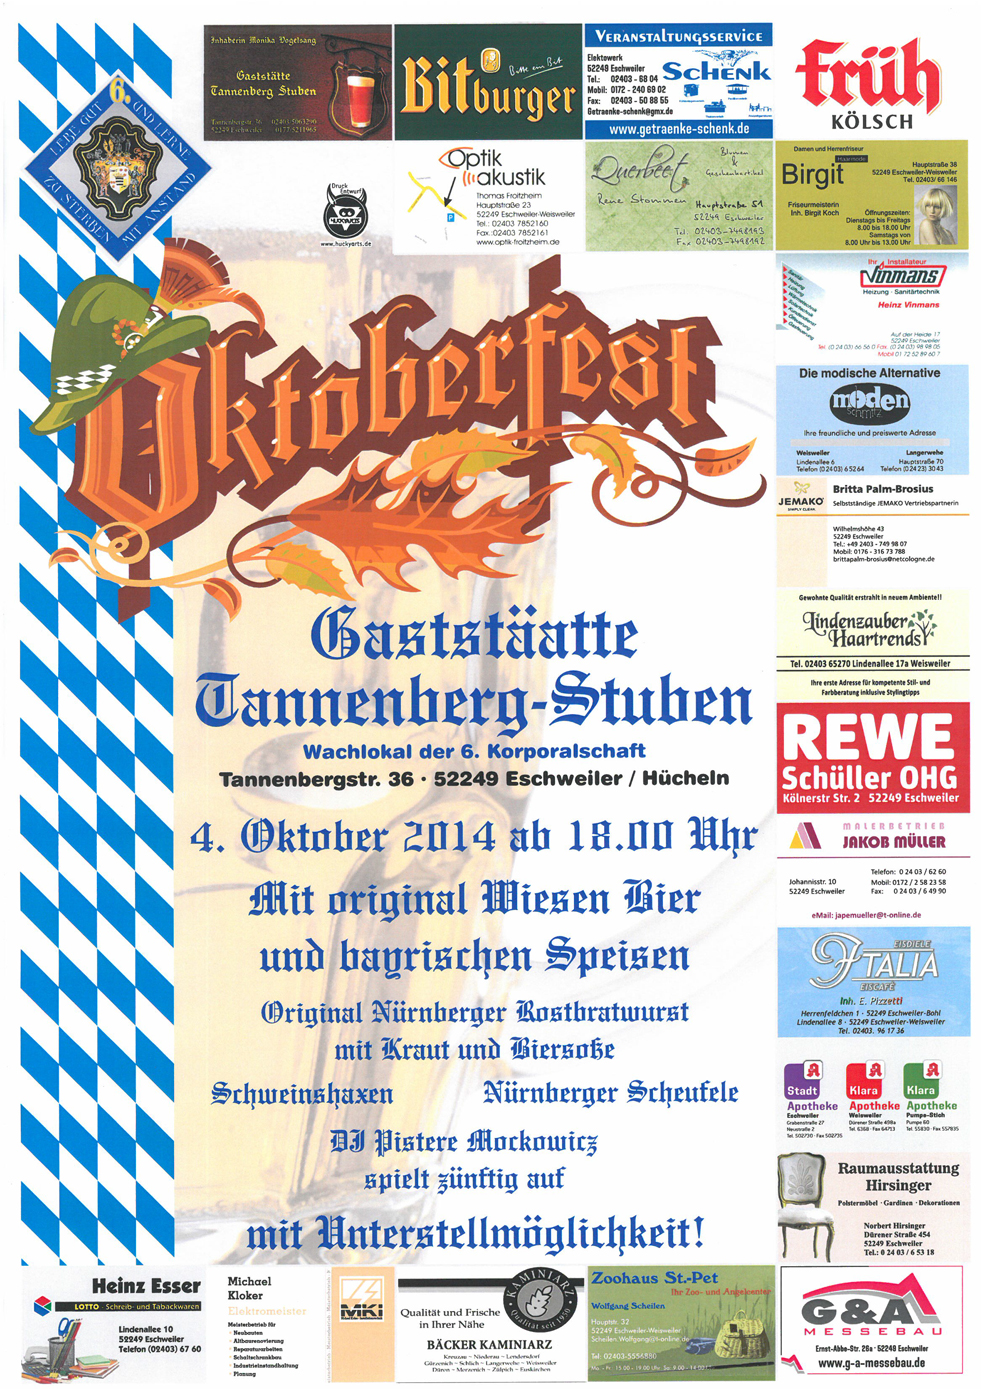 Oktoberfest Weisweiler 2014